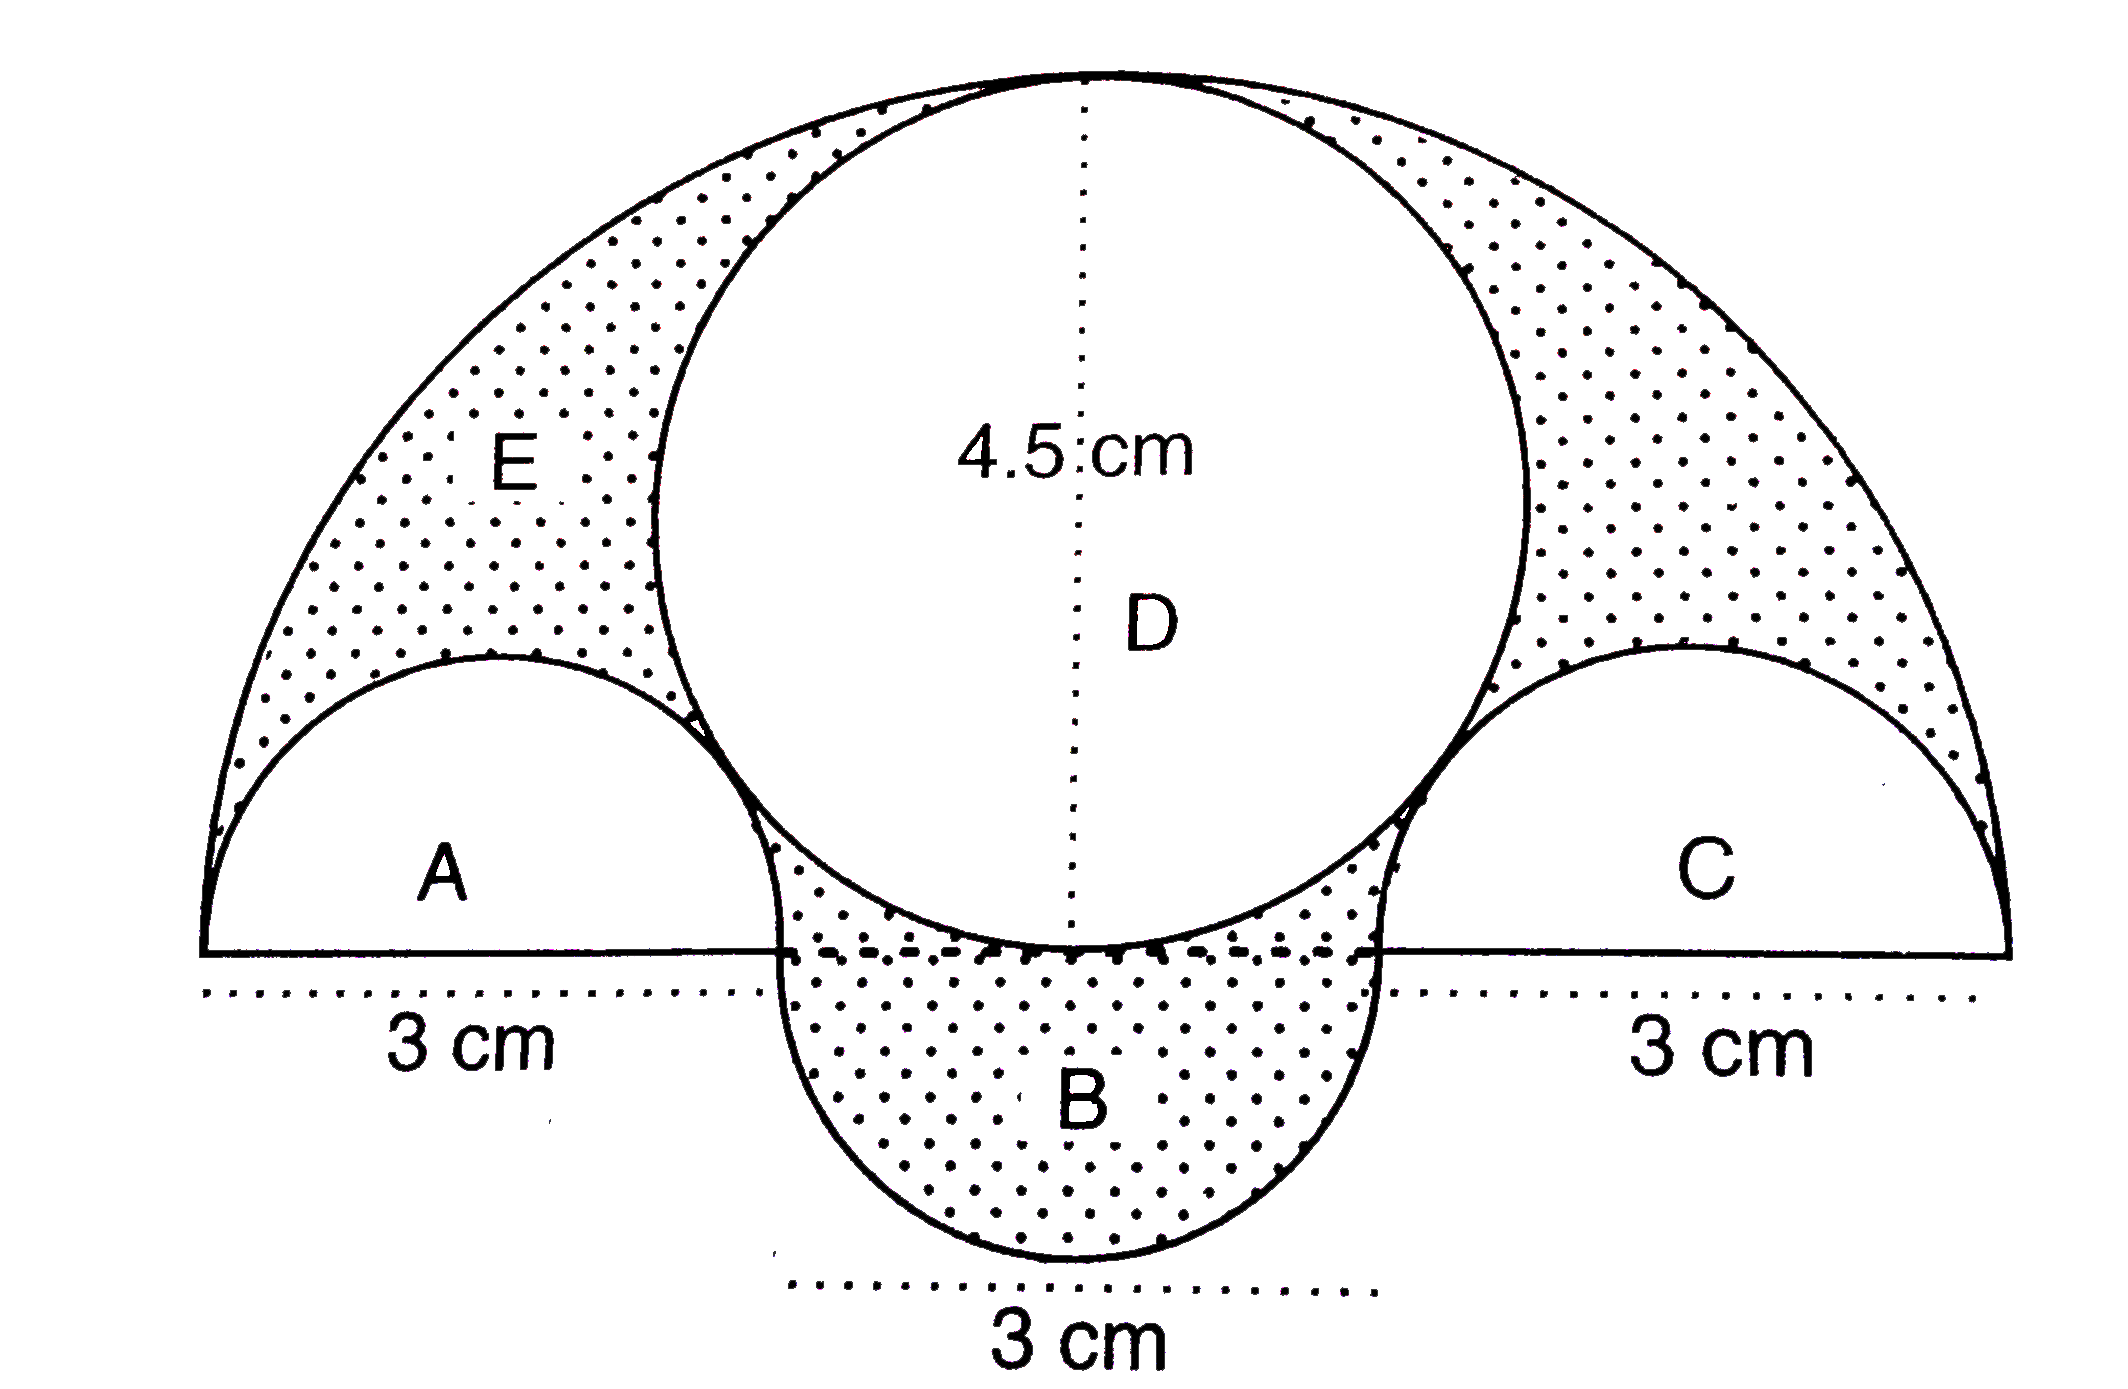 चित्र में, तीन अर्धवृत्त A, B तथा C हैं, जिनमें प्रत्येक के व्यास 3 सेमी हैं | एक दूसरा अर्धवृत्त E है जिसके अन्दर 4.5 सेमी व्यास वाला एक वृत्त D है | गणना कीजिए :       25 पैसे प्रति वर्ग सेमी. की दर से छायांकित भाग की पेन्टिंग लगभग रूपये में |